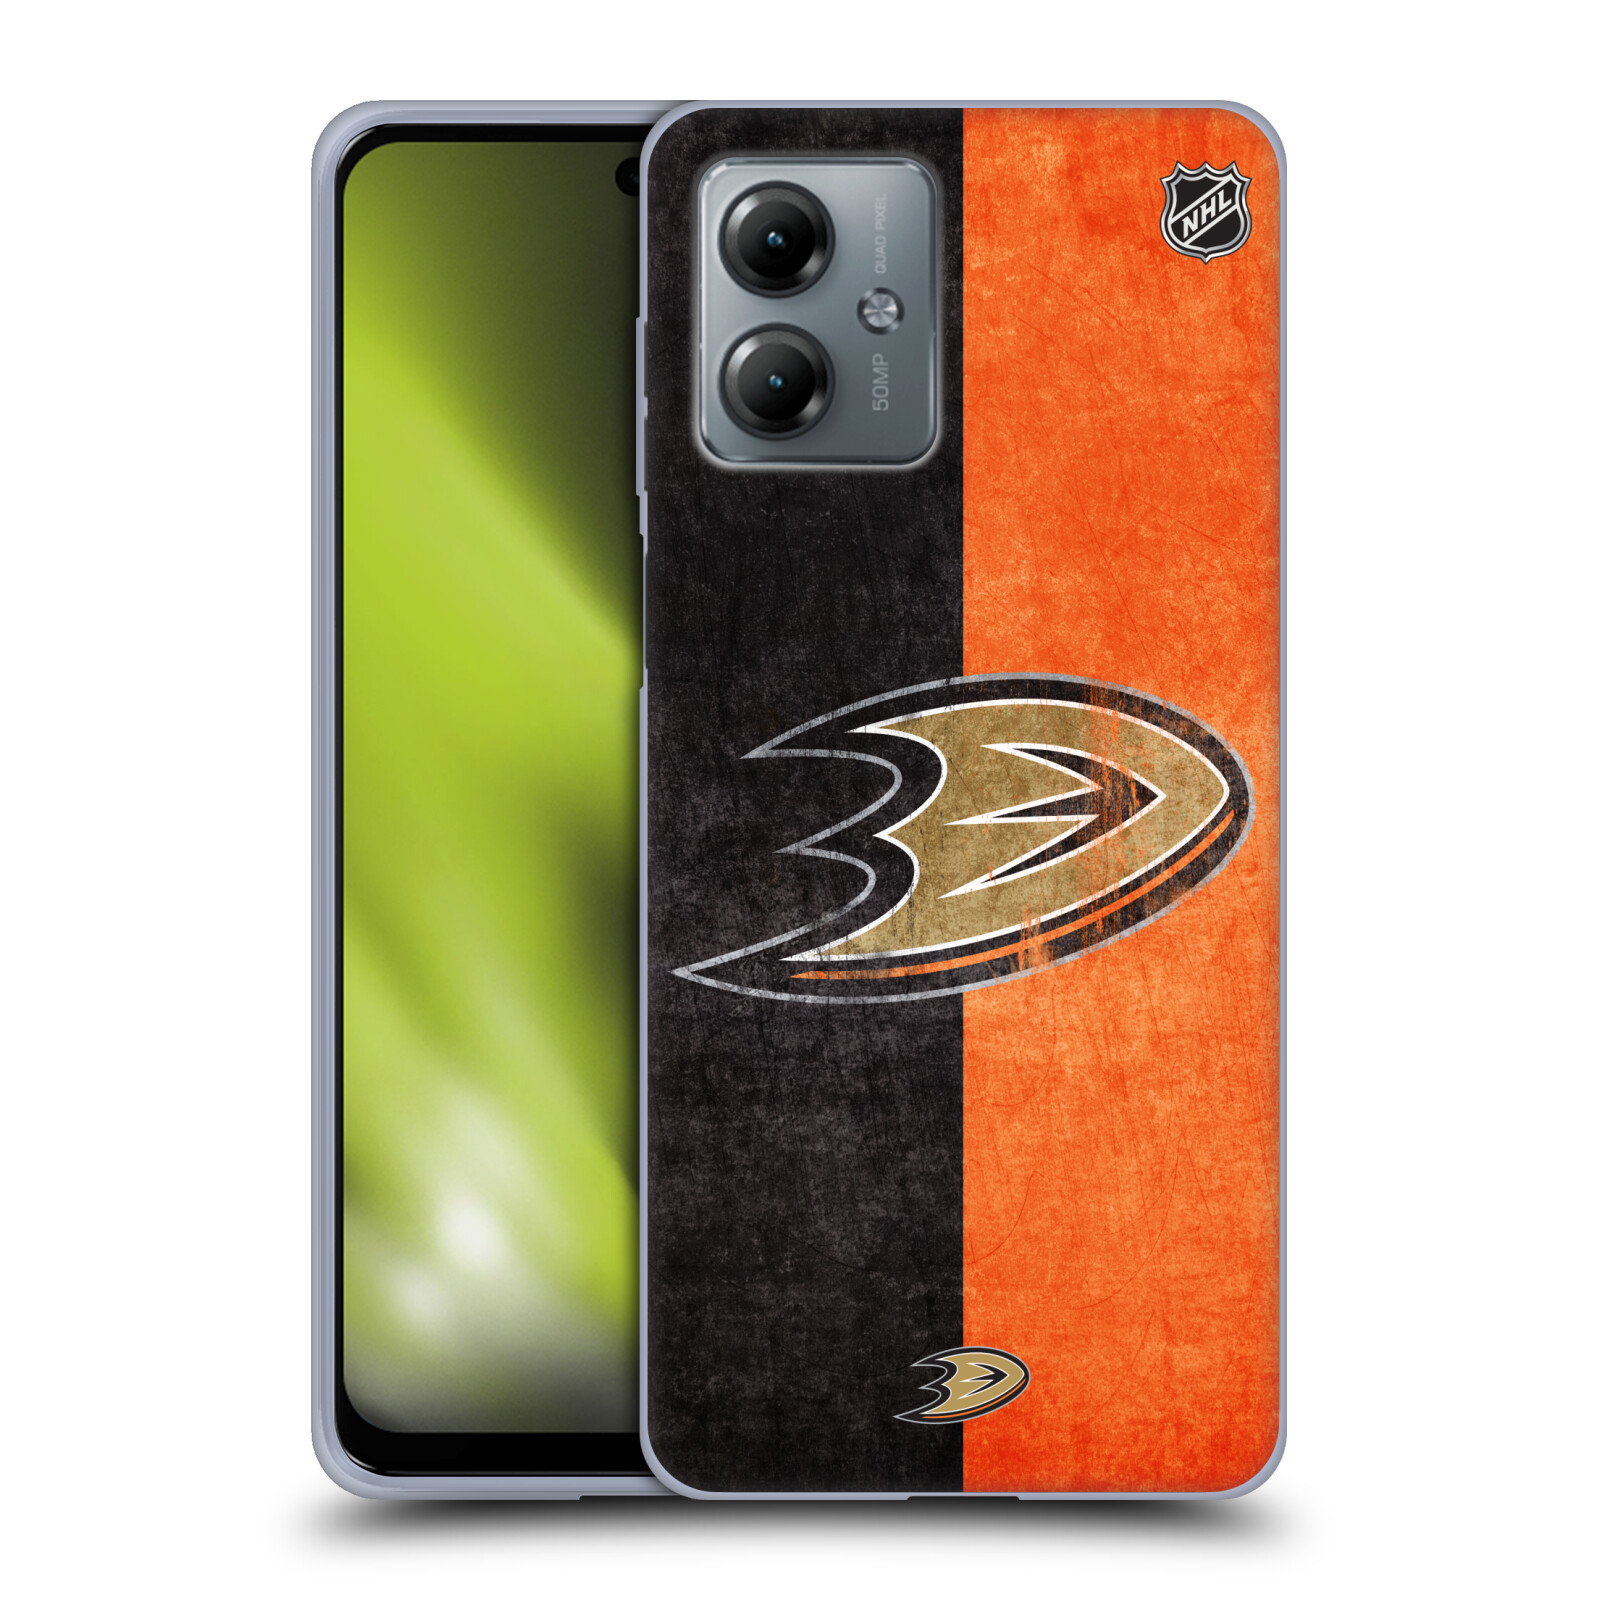 Silikonové pouzdro na mobil Motorola Moto G14 - NHL - Půlené logo Anaheim Ducks (Silikonový kryt, obal, pouzdro na mobilní telefon Motorola Moto G14 s licencovaným motivem NHL - Půlené logo Anaheim Ducks)